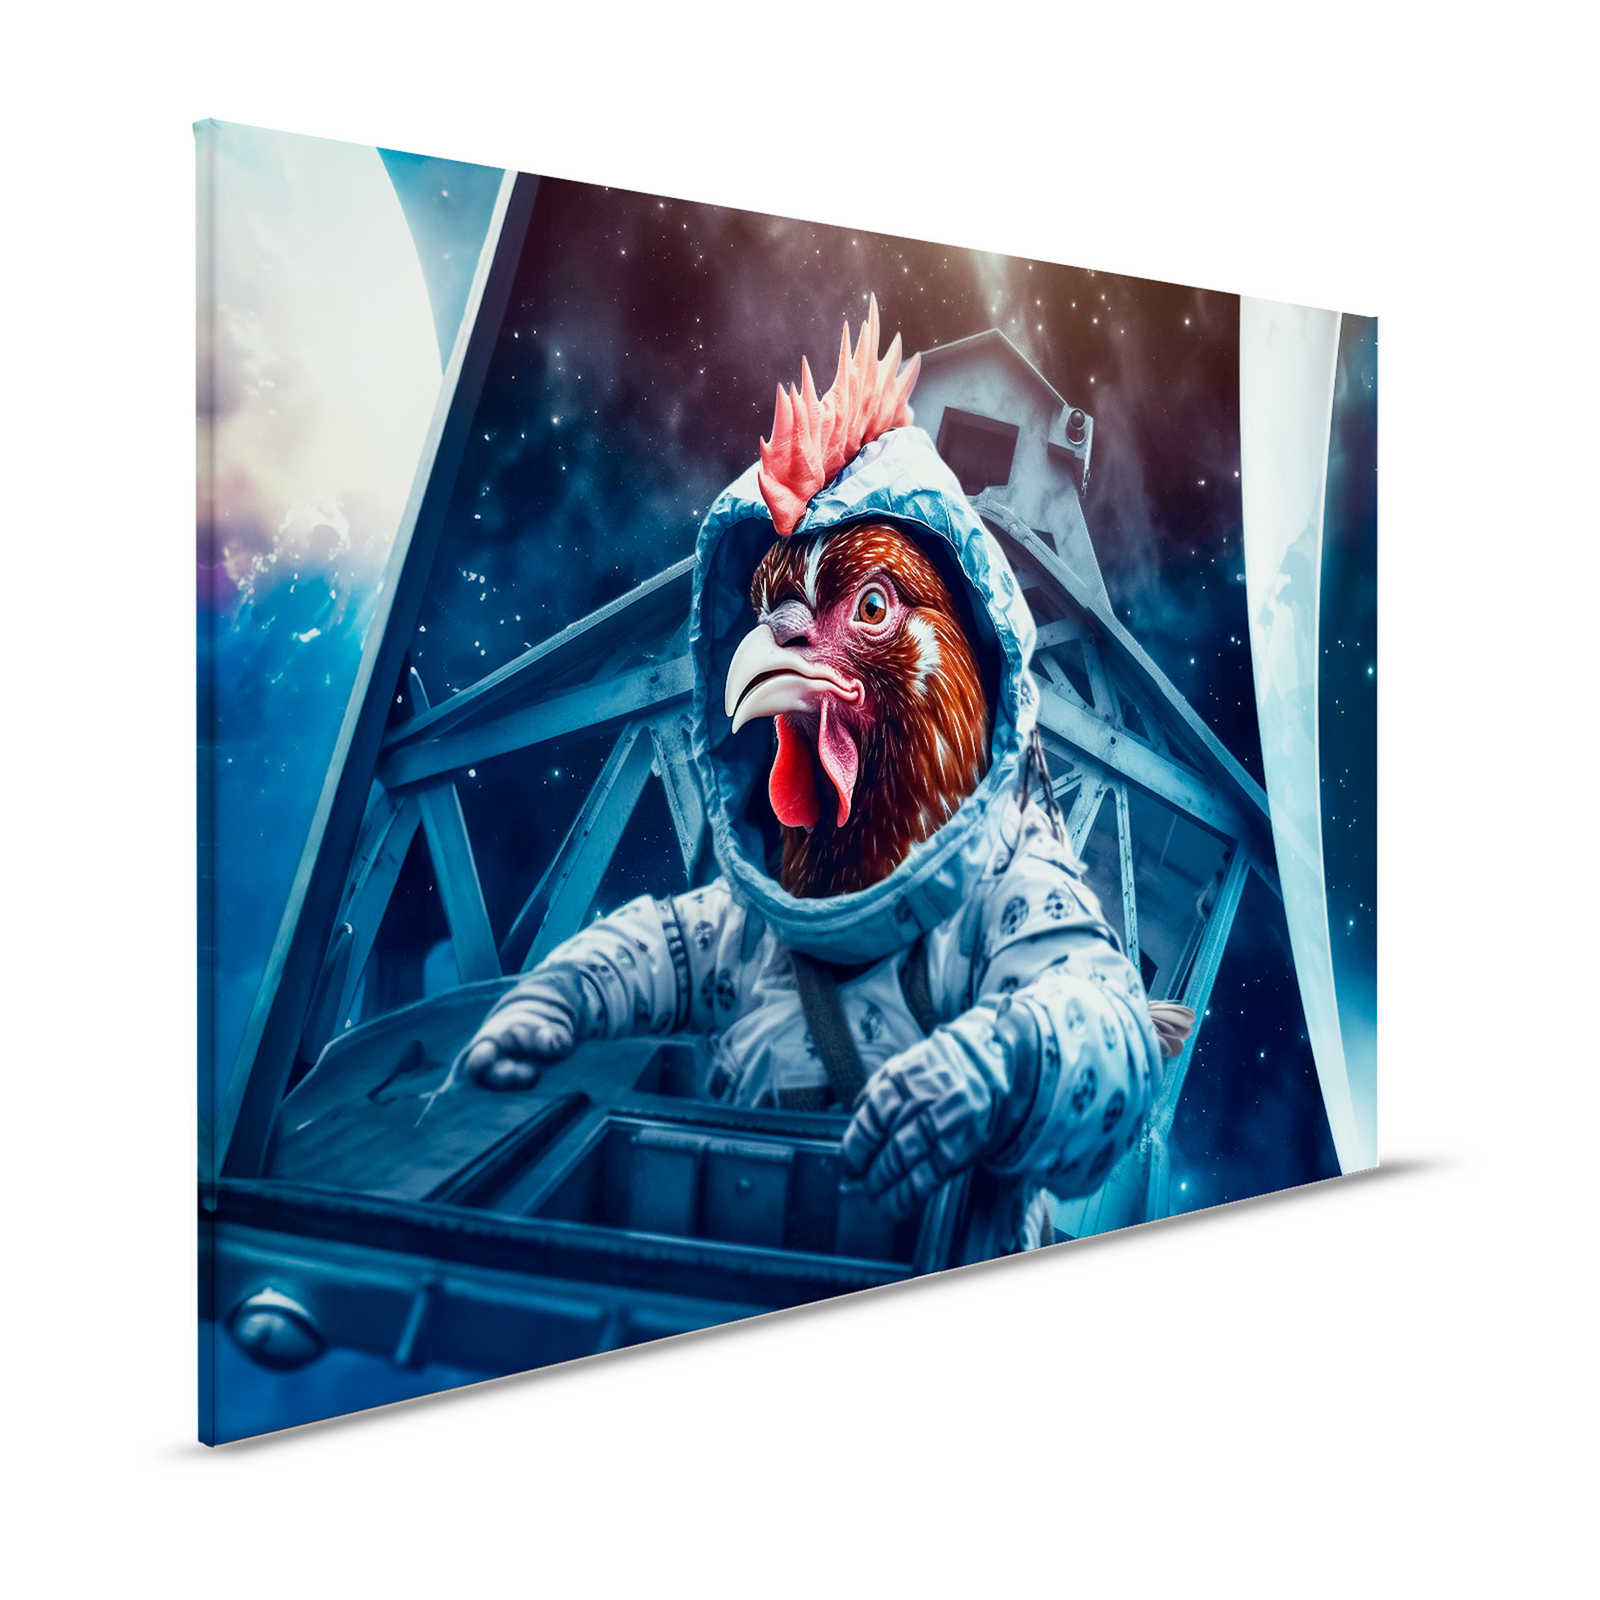 KI Pintura en lienzo »Space Chicken« - 120 cm x 80 cm
